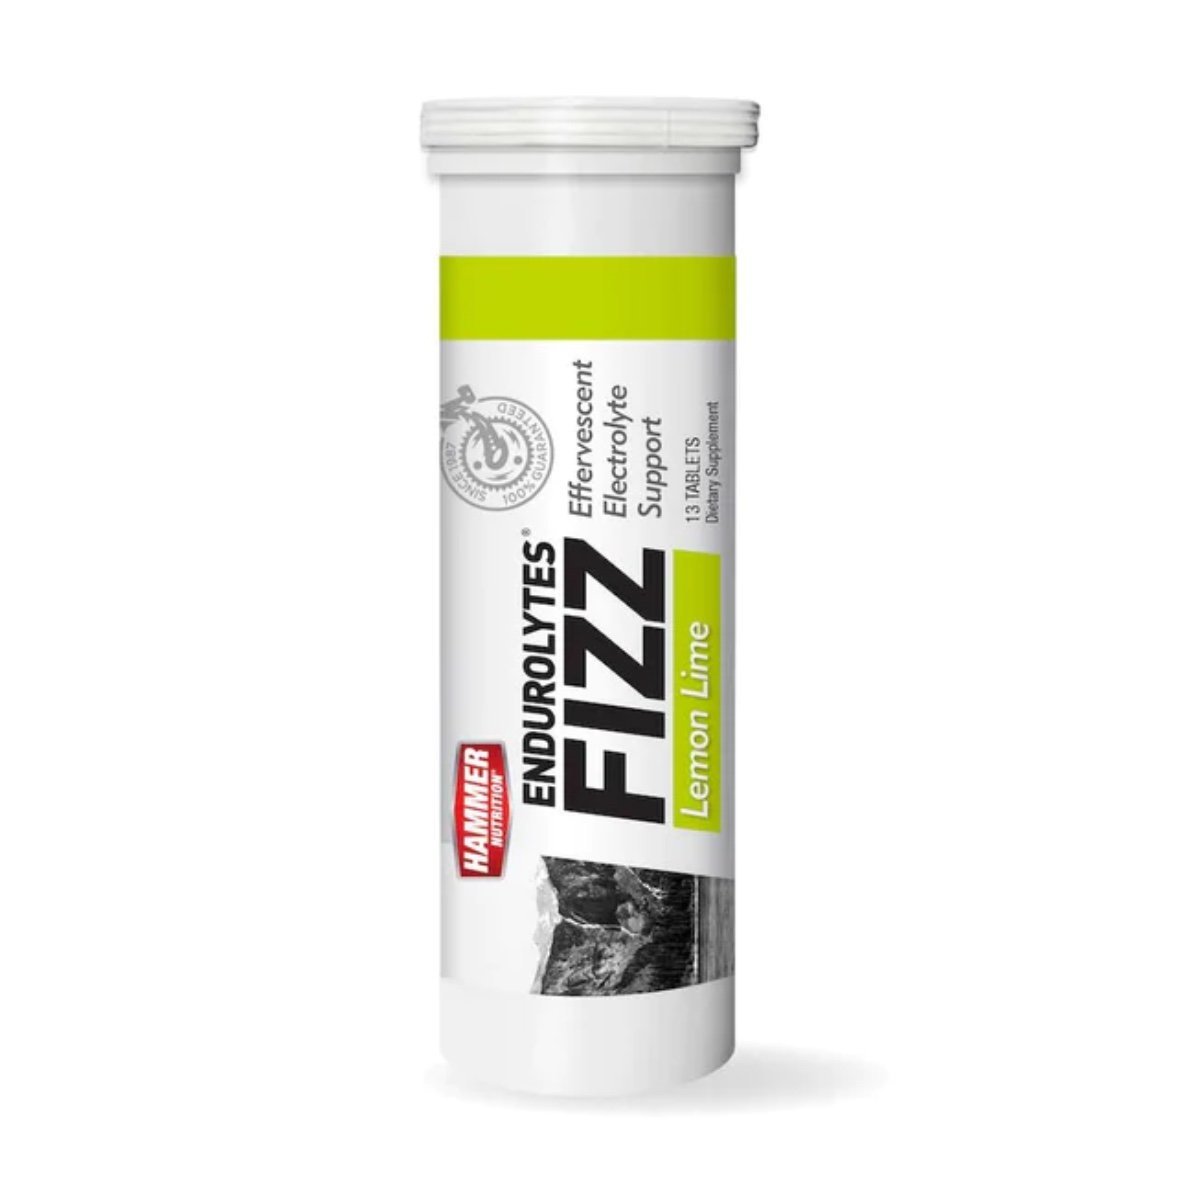 Šumivé tablety Hammer Endurolytes Fizz®, 100 g, citrón - limetka